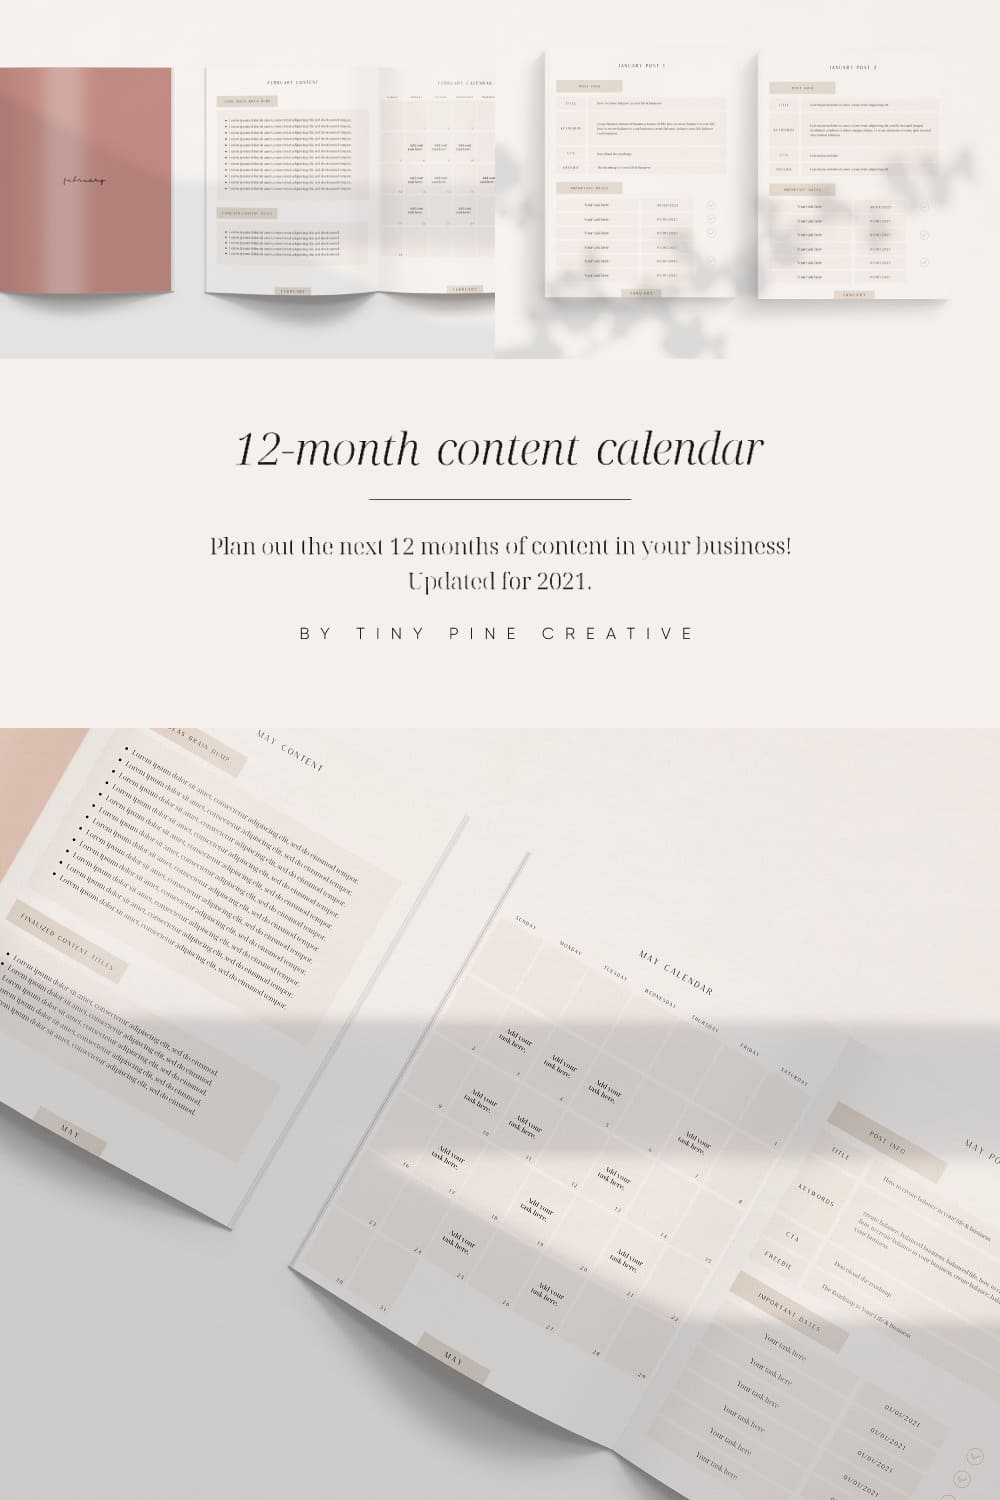 content calendar planner template pinterest image.